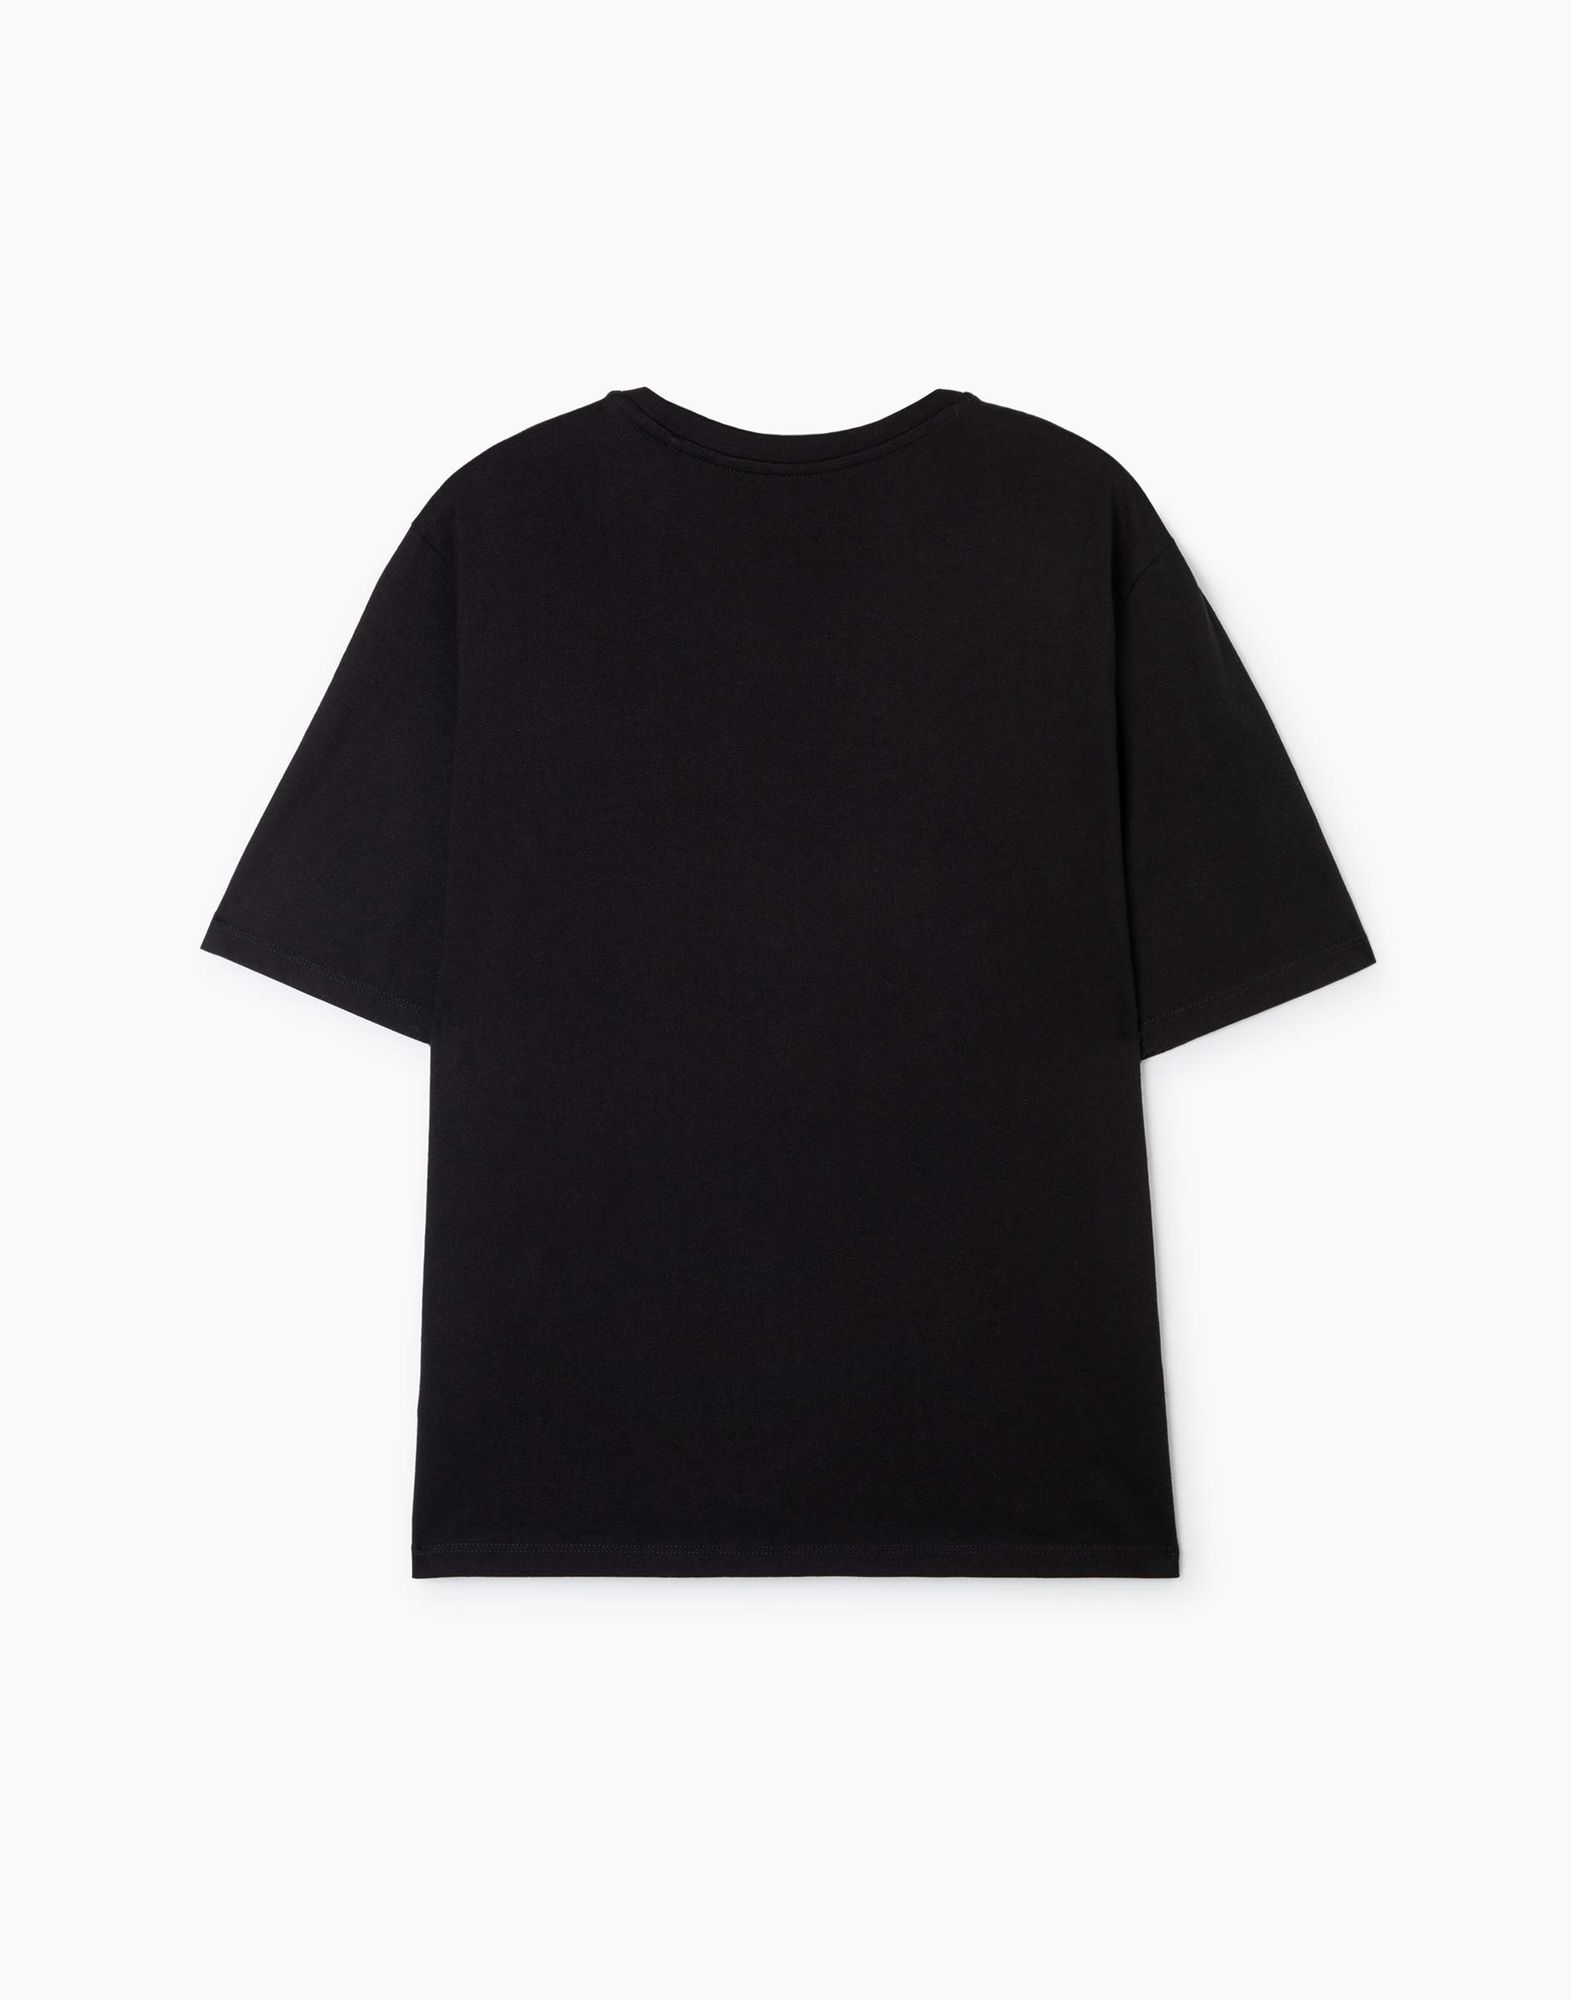 Чёрная футболка superoversize с принтом для девочки-1